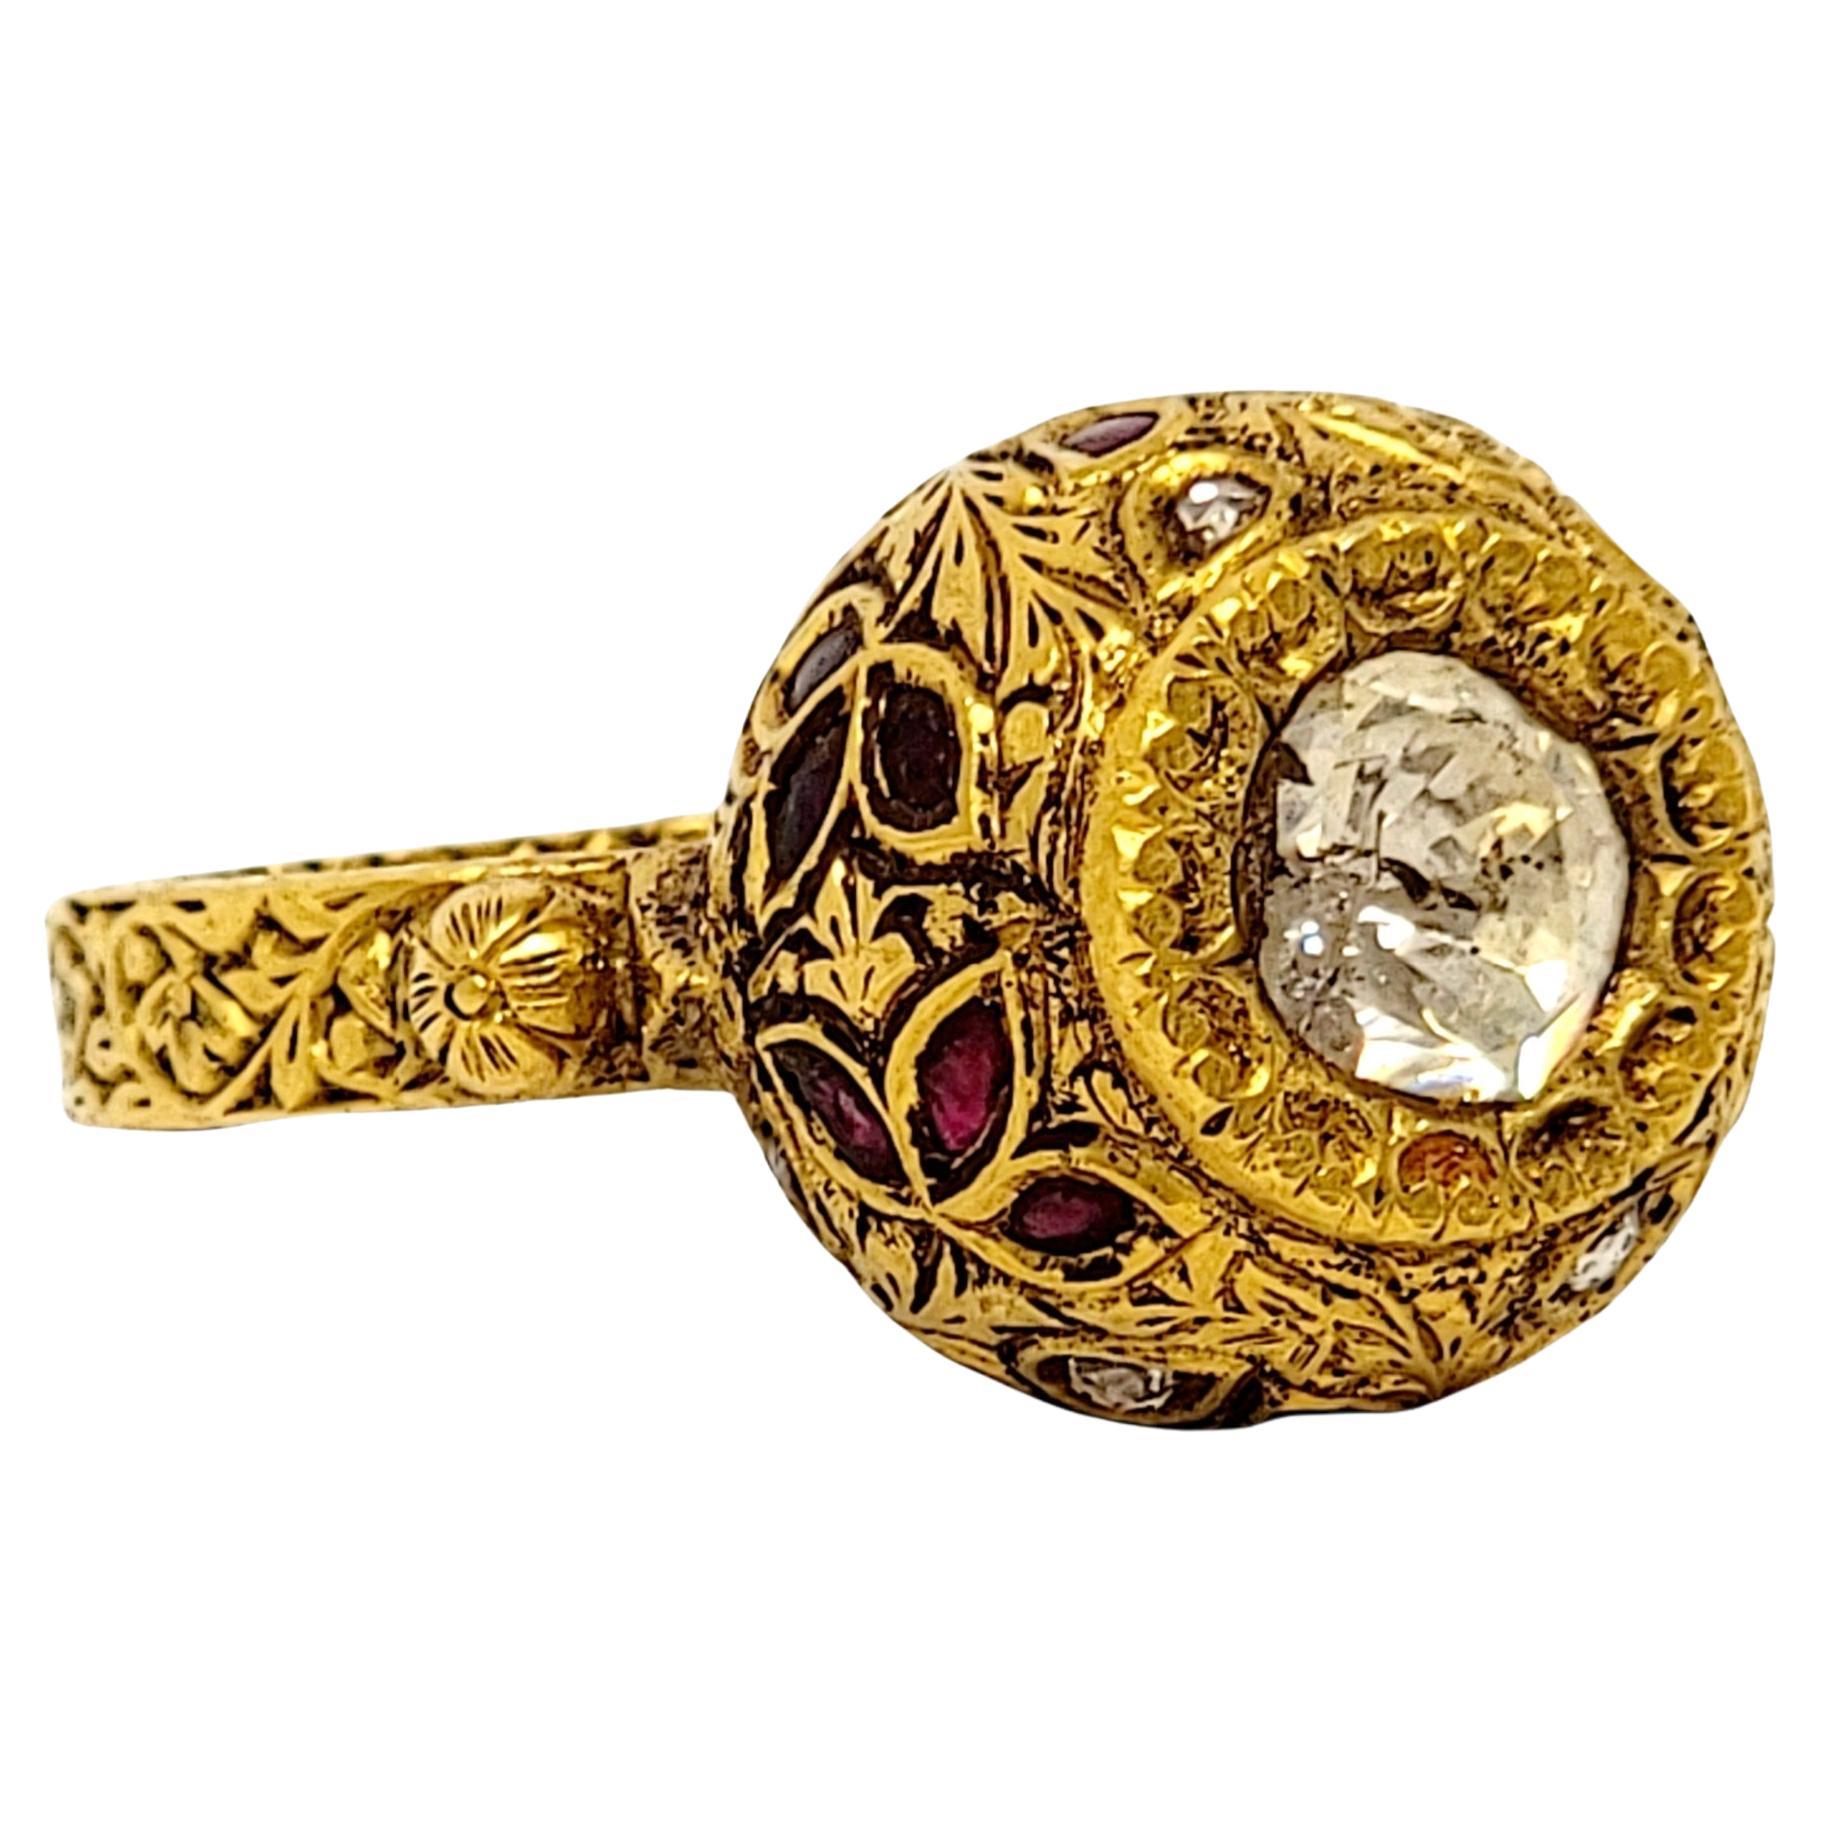 1.52 Carat Total Polki and Rose Cut Diamond Ring 21 Karat Yellow Gold Ornate